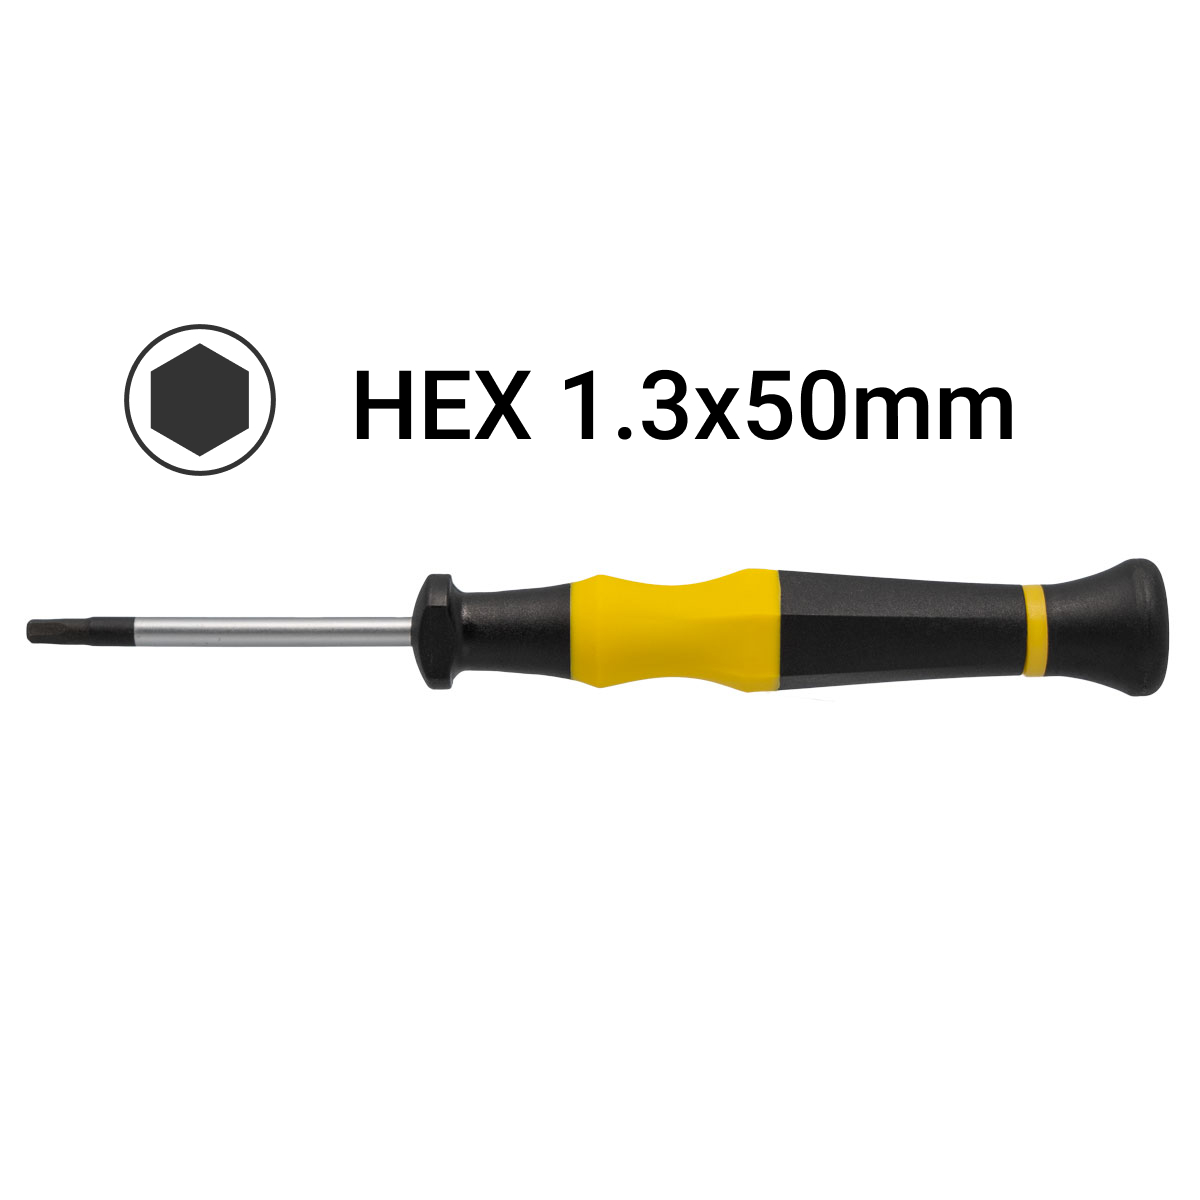 H1.3x50mm Hex Precision Screwdriver